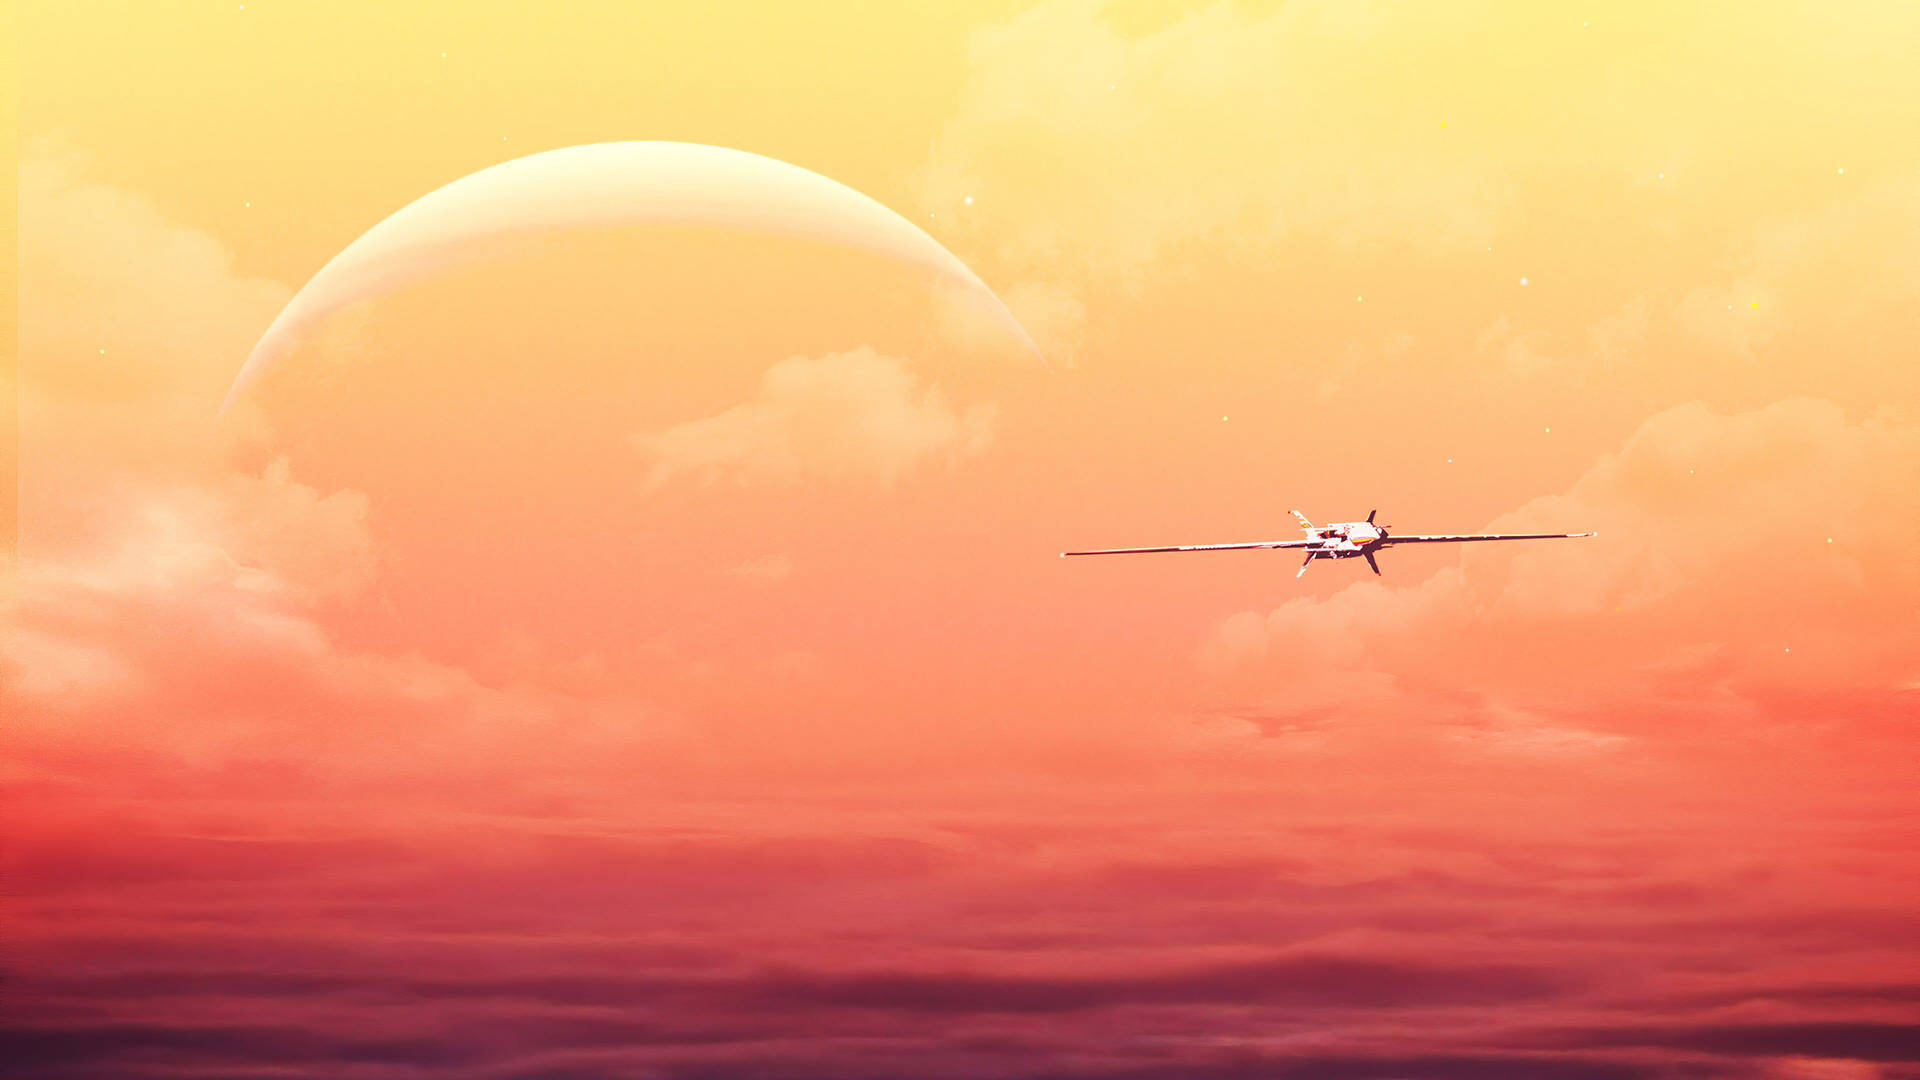 4k Plane And Orange Sky Background